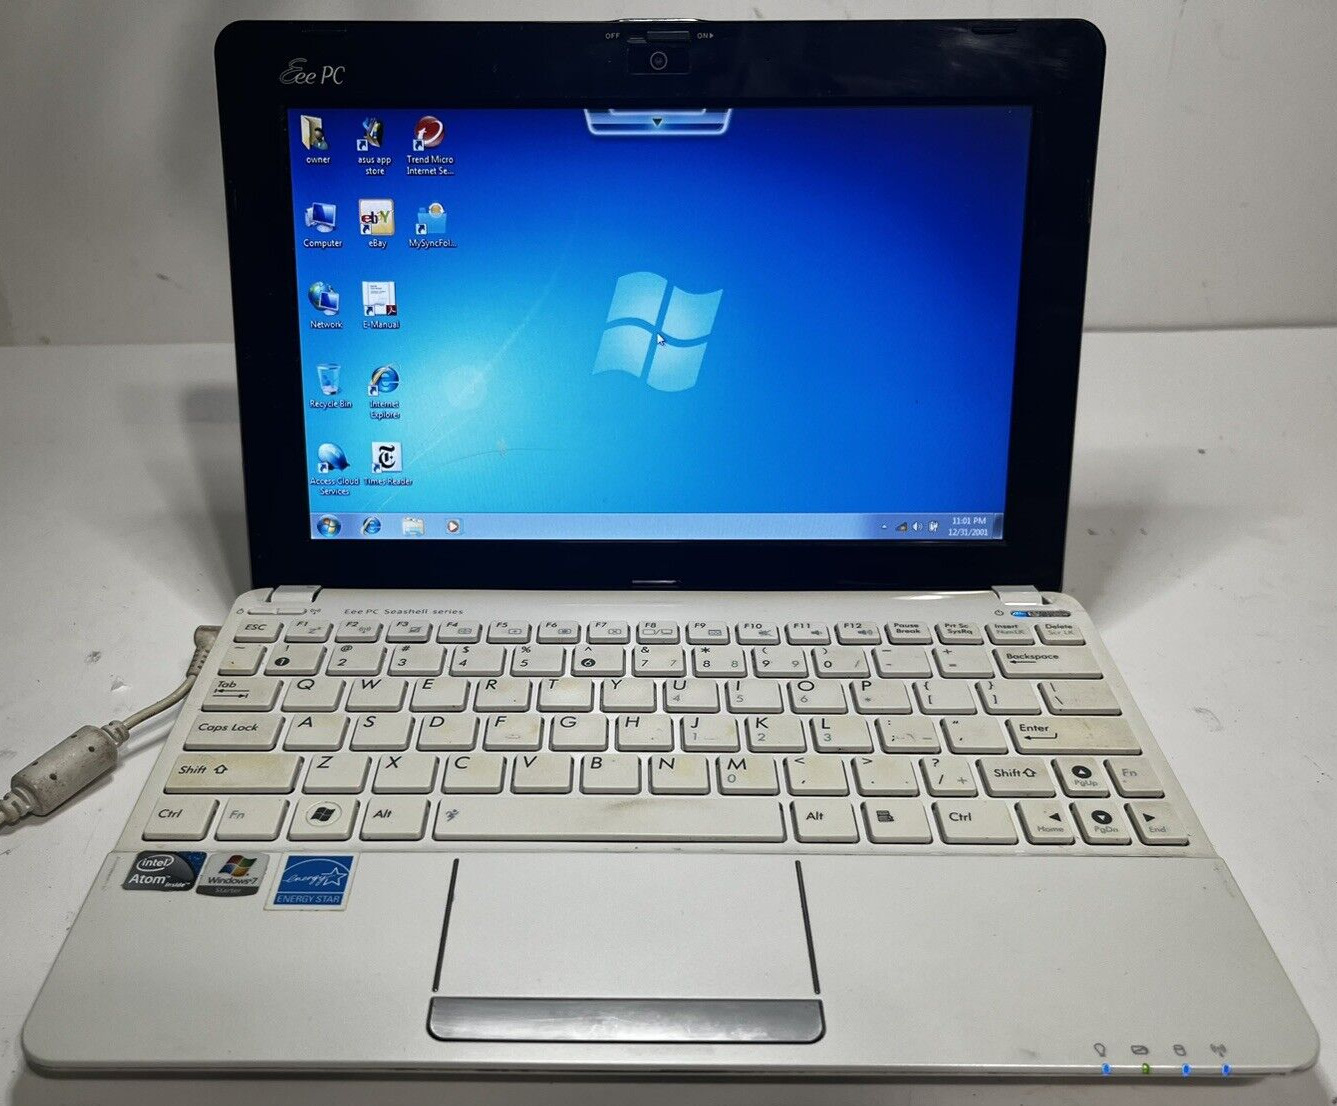 Asus Eee PC Seashell Series Laptop Notebook Win7 Intel Atom N550 1.5 GHz 2GB RAM